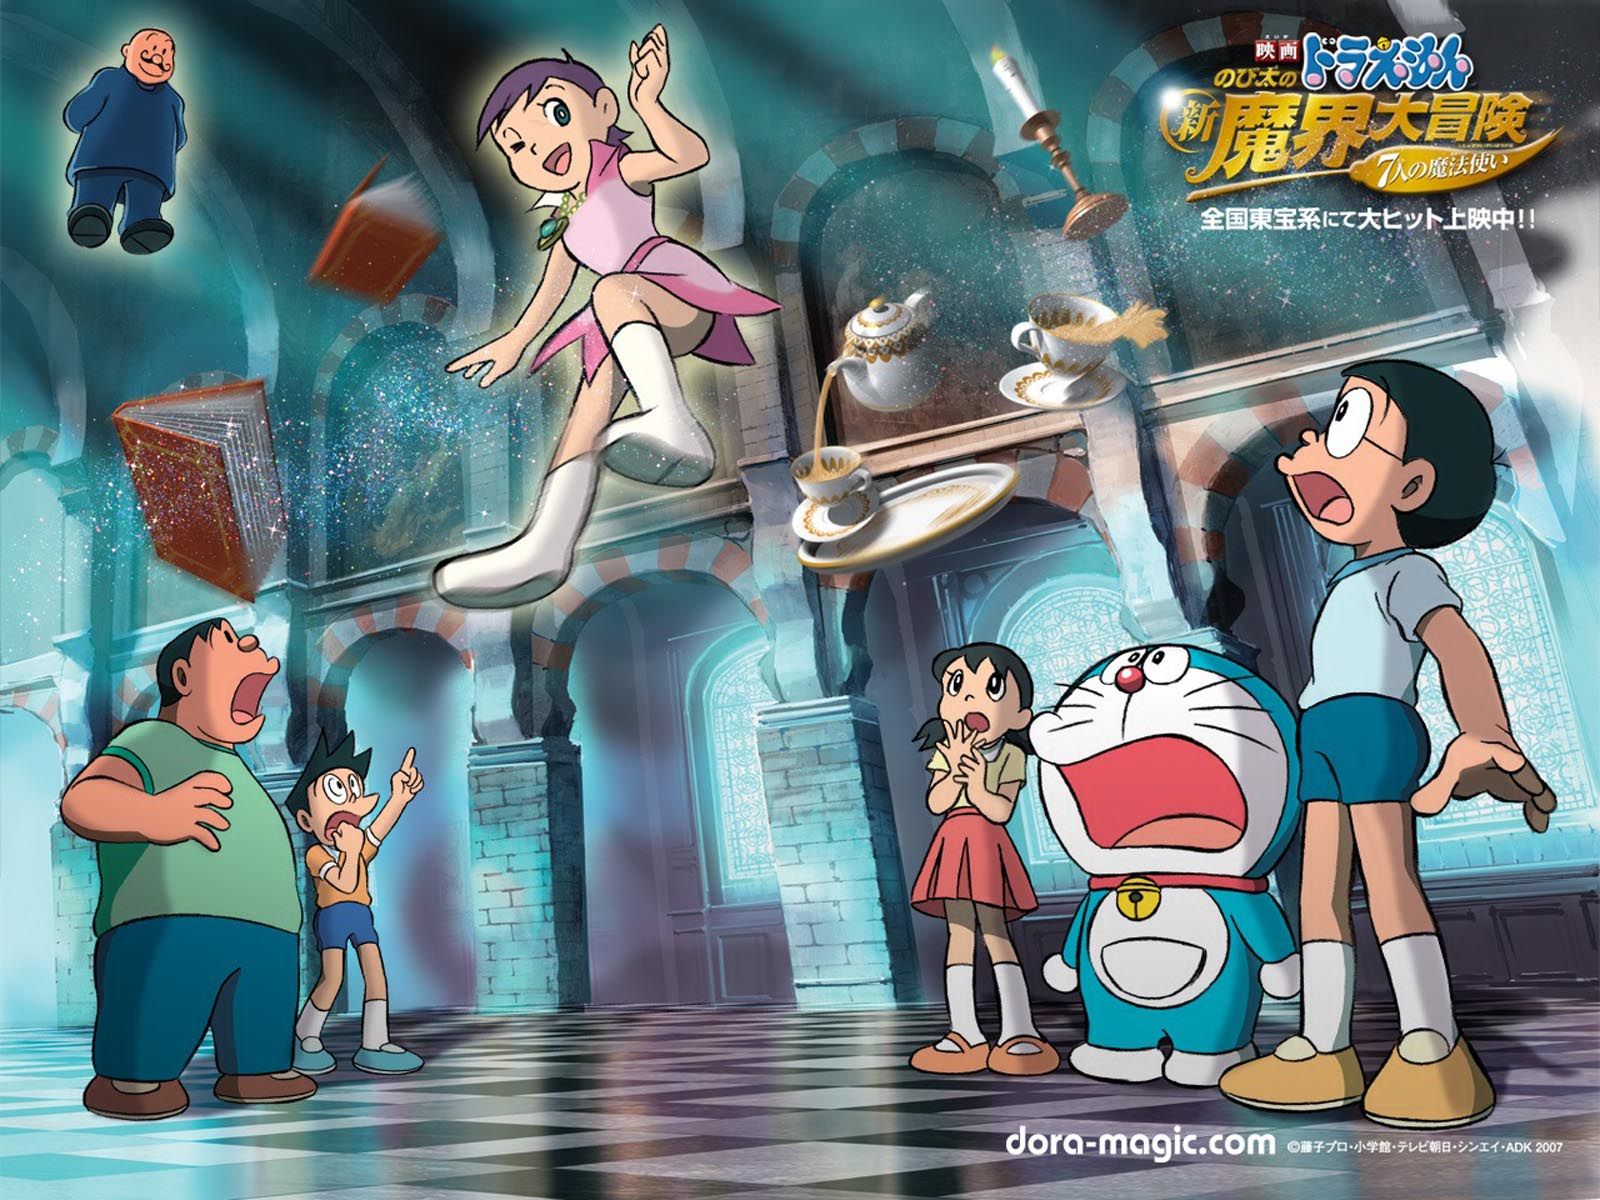 Doraemon Wallpaper 1600x1200 Wallpapers, 1600x1200 Wallpapers ...